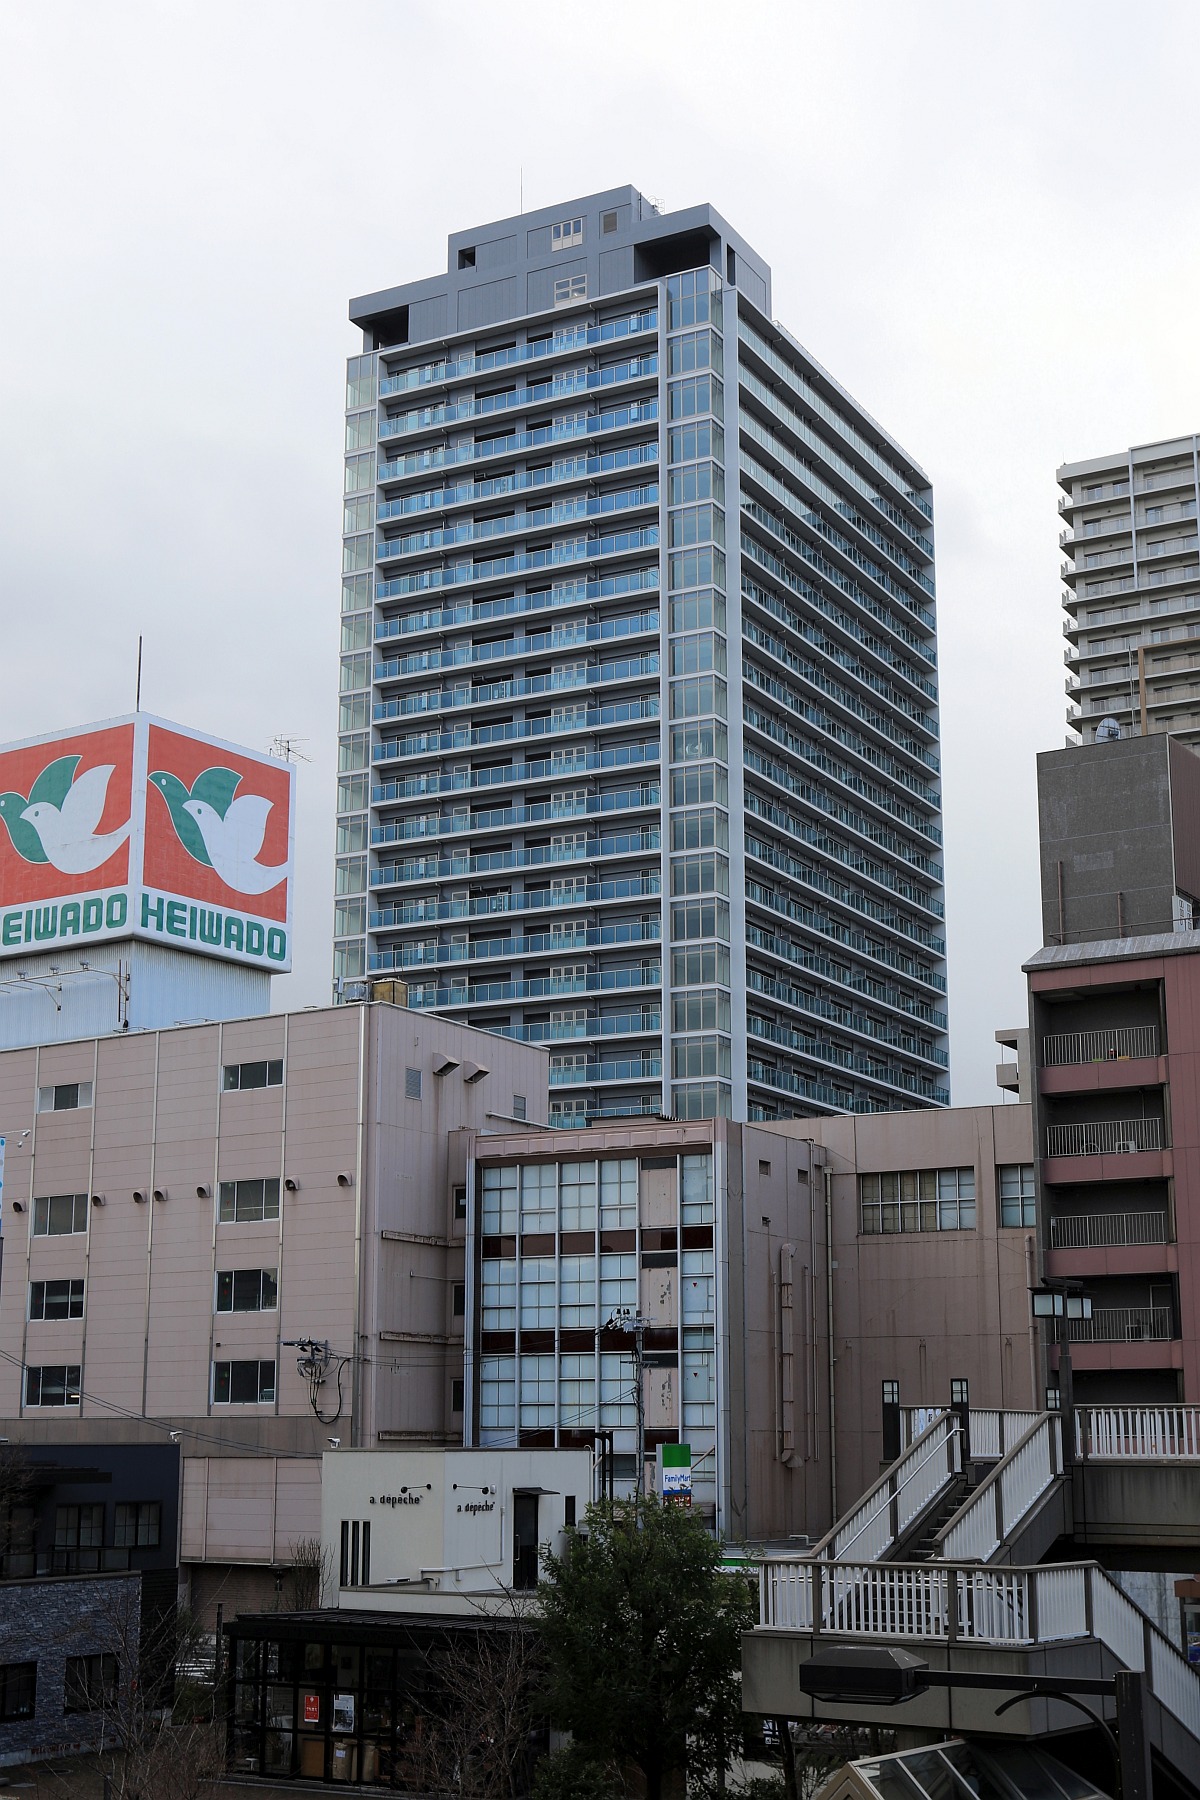 滋賀県のjr草津駅近く 地上26階 アトラスタワー草津 の様子 2 23 超高層マンション 超高層ビル